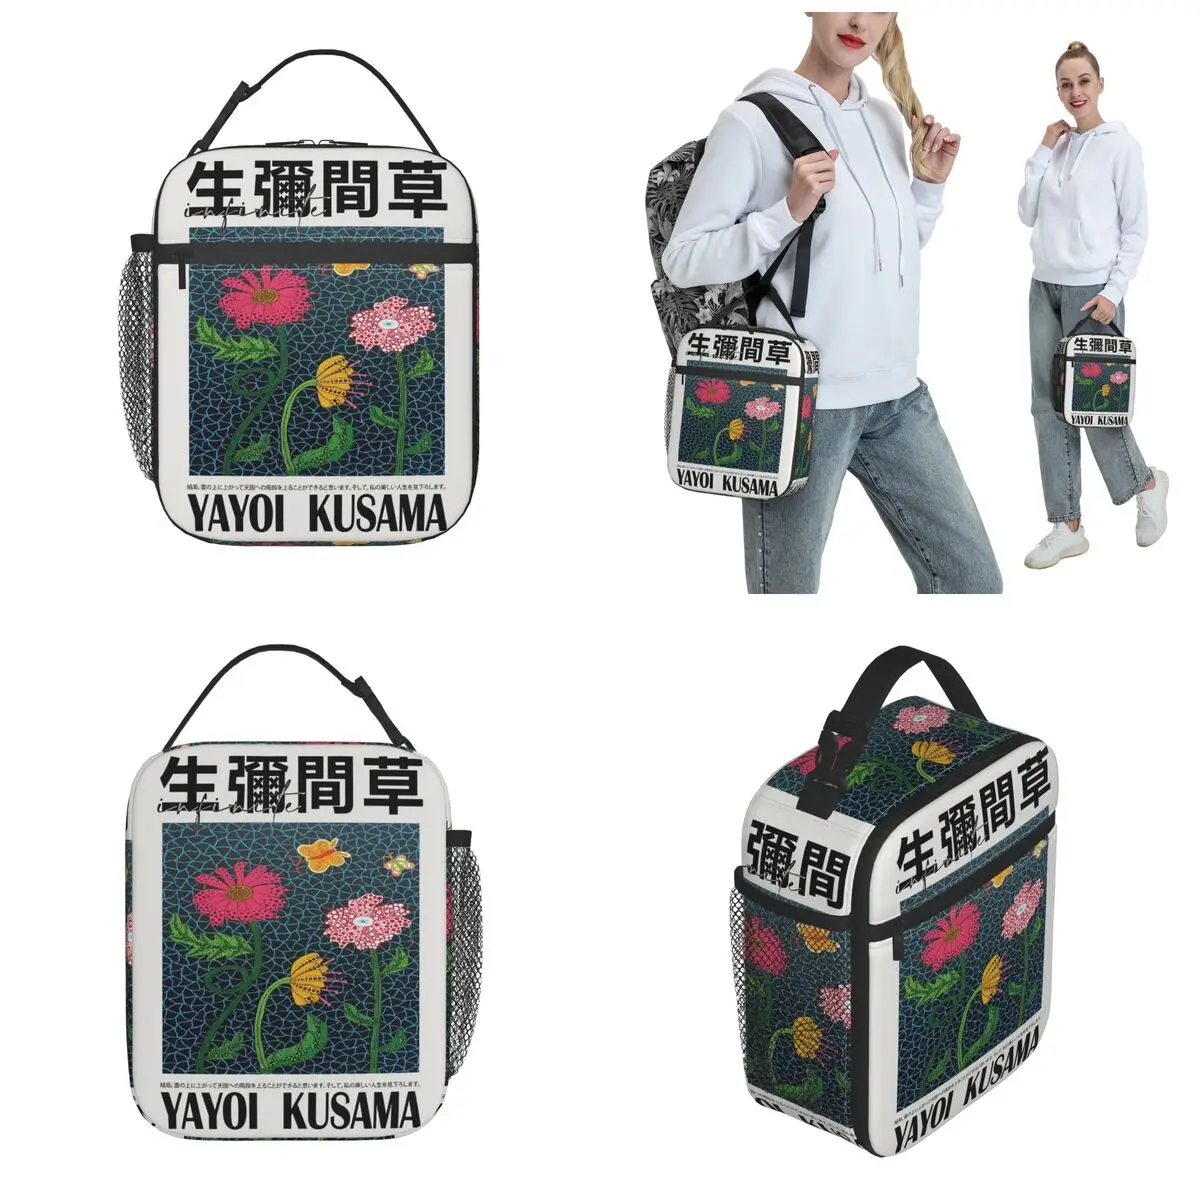 Yayoi Kusama Термоизолированная сумка для ланча в японском стиле в стиле поп-арт Pianic Портативный контейнер для ланча Кулер Термальный ланч-бокс Изображение 1 